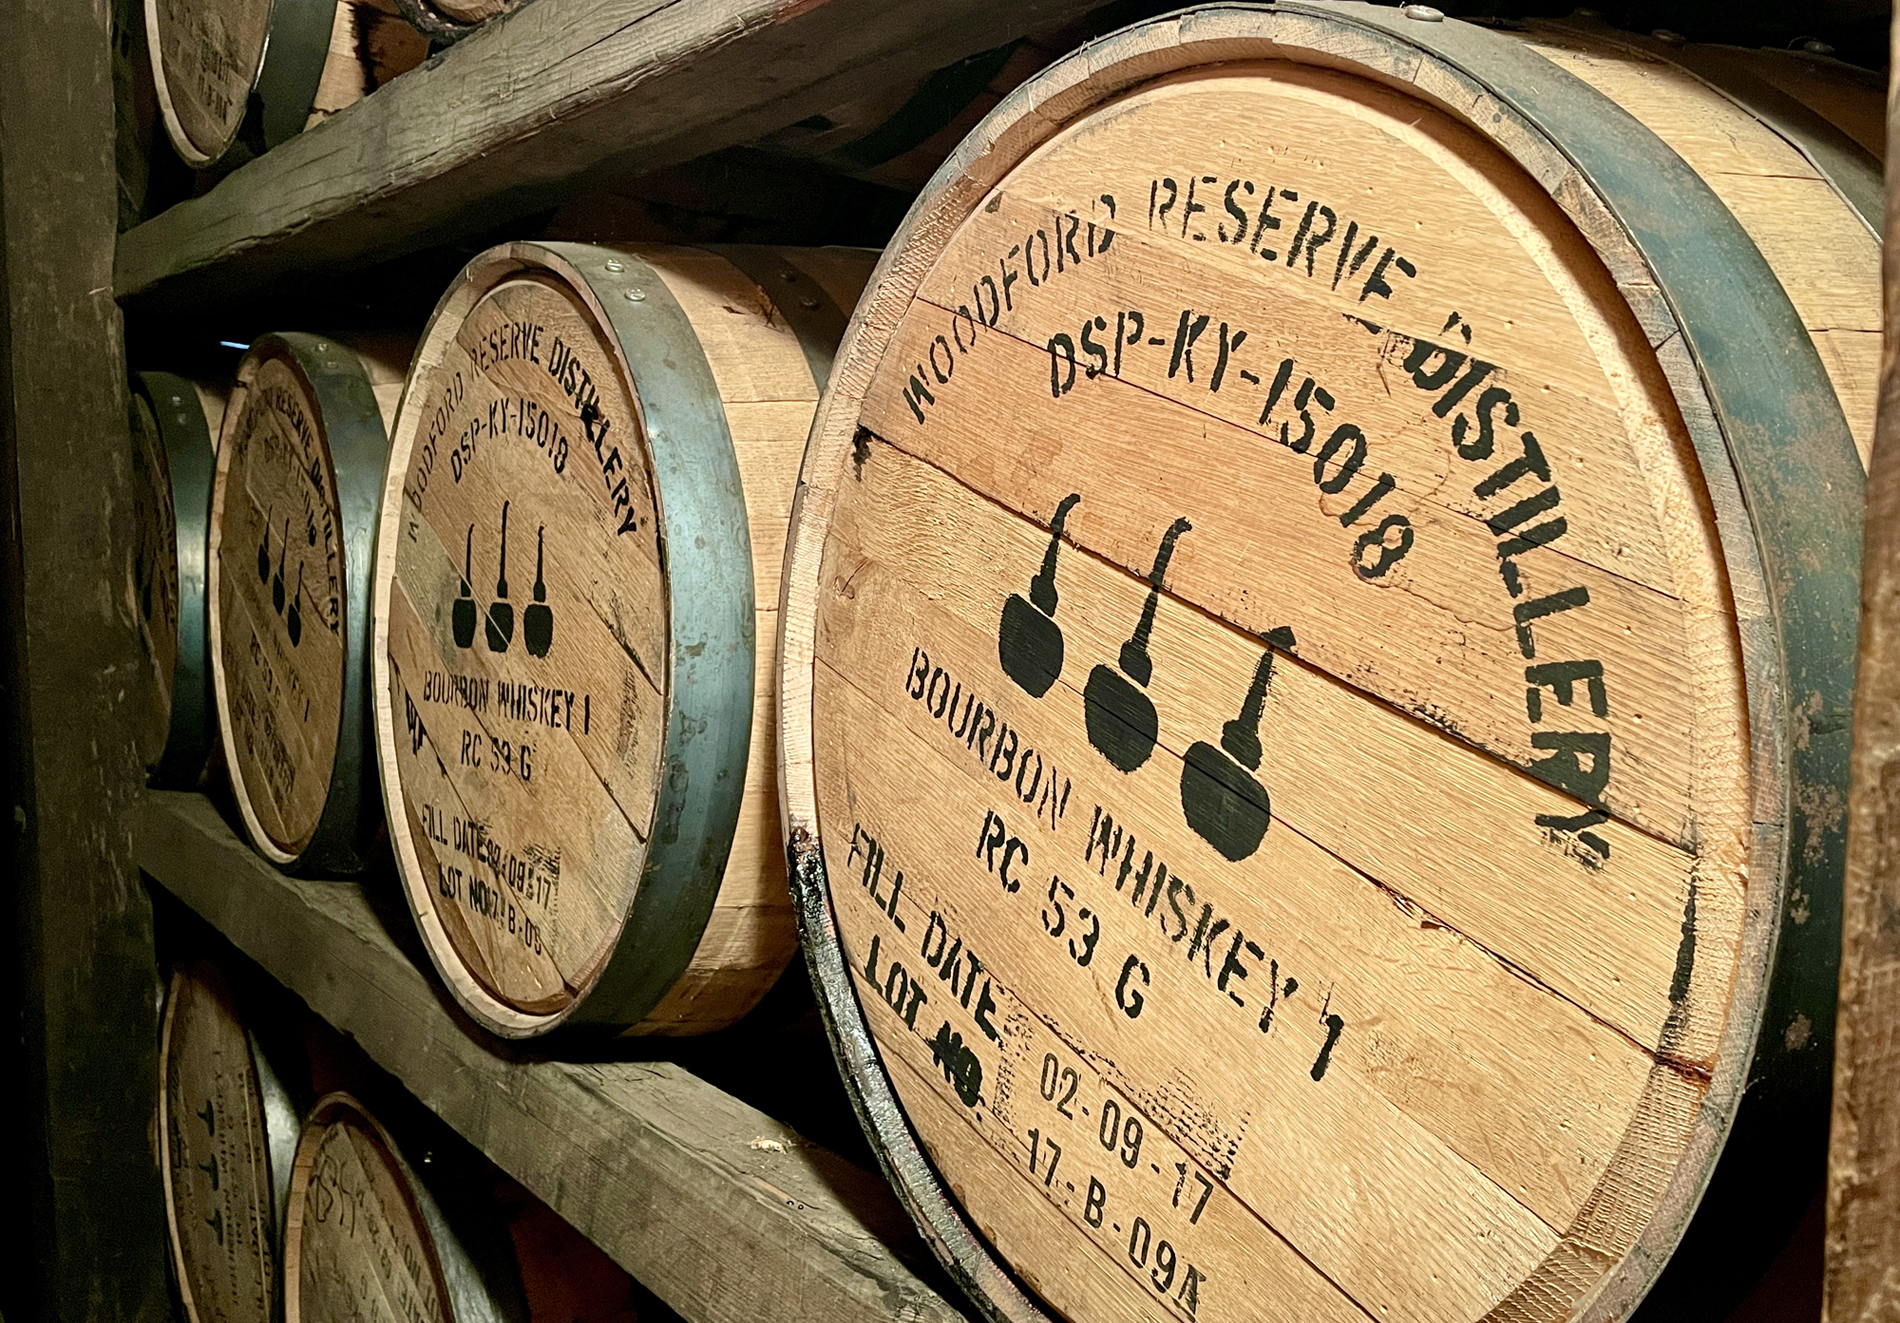 Barrel aging: What is bourbon's sweet spot? - CaskX